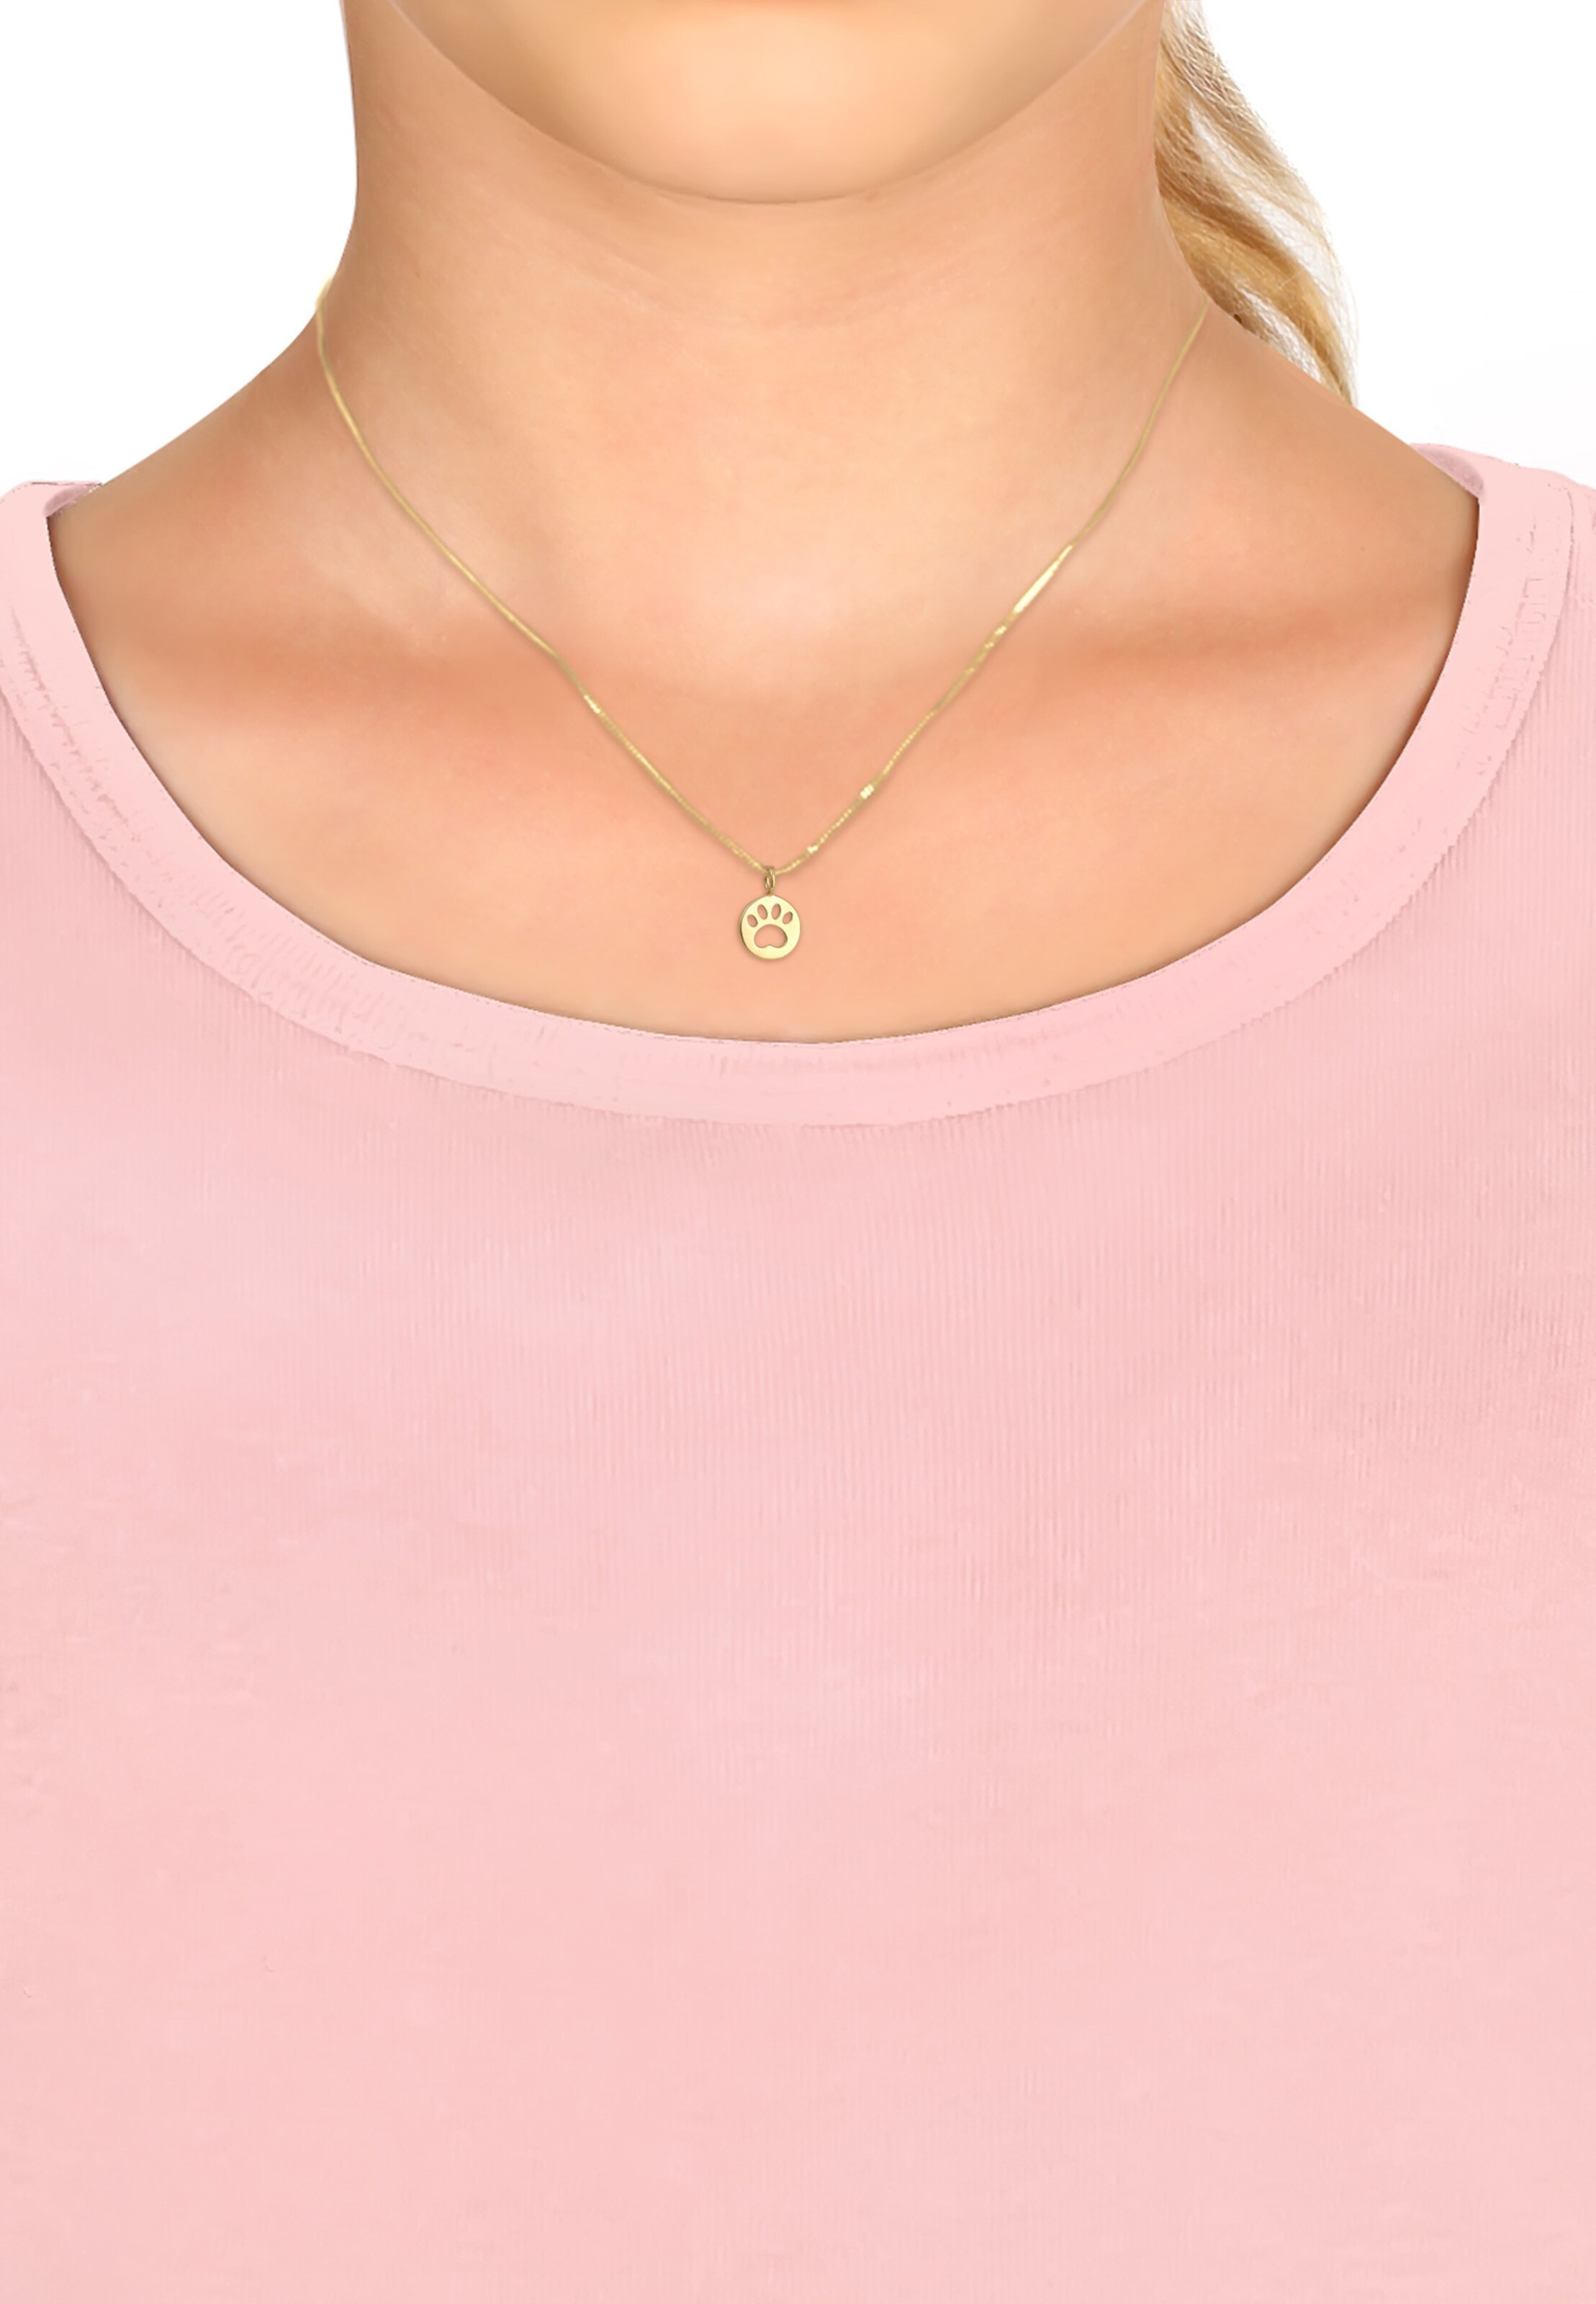 Frauen Schmuck ELLI Halskette in Gold - MZ32171